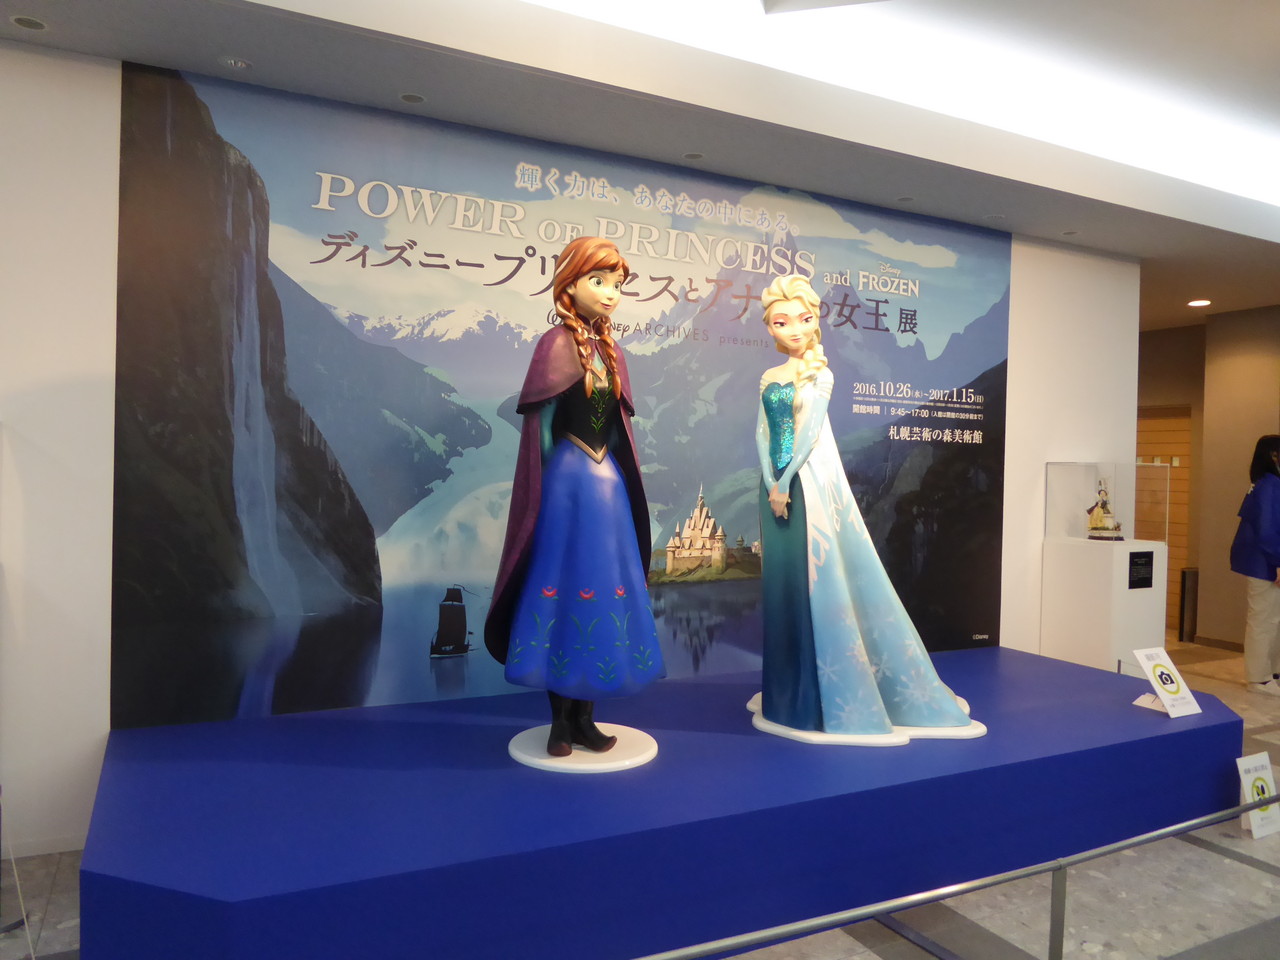 札幌芸術の森美術館 ディズニープリンセスとアナと雪の女王展 Power Of Princess を鑑賞 の巻 Rubis Life